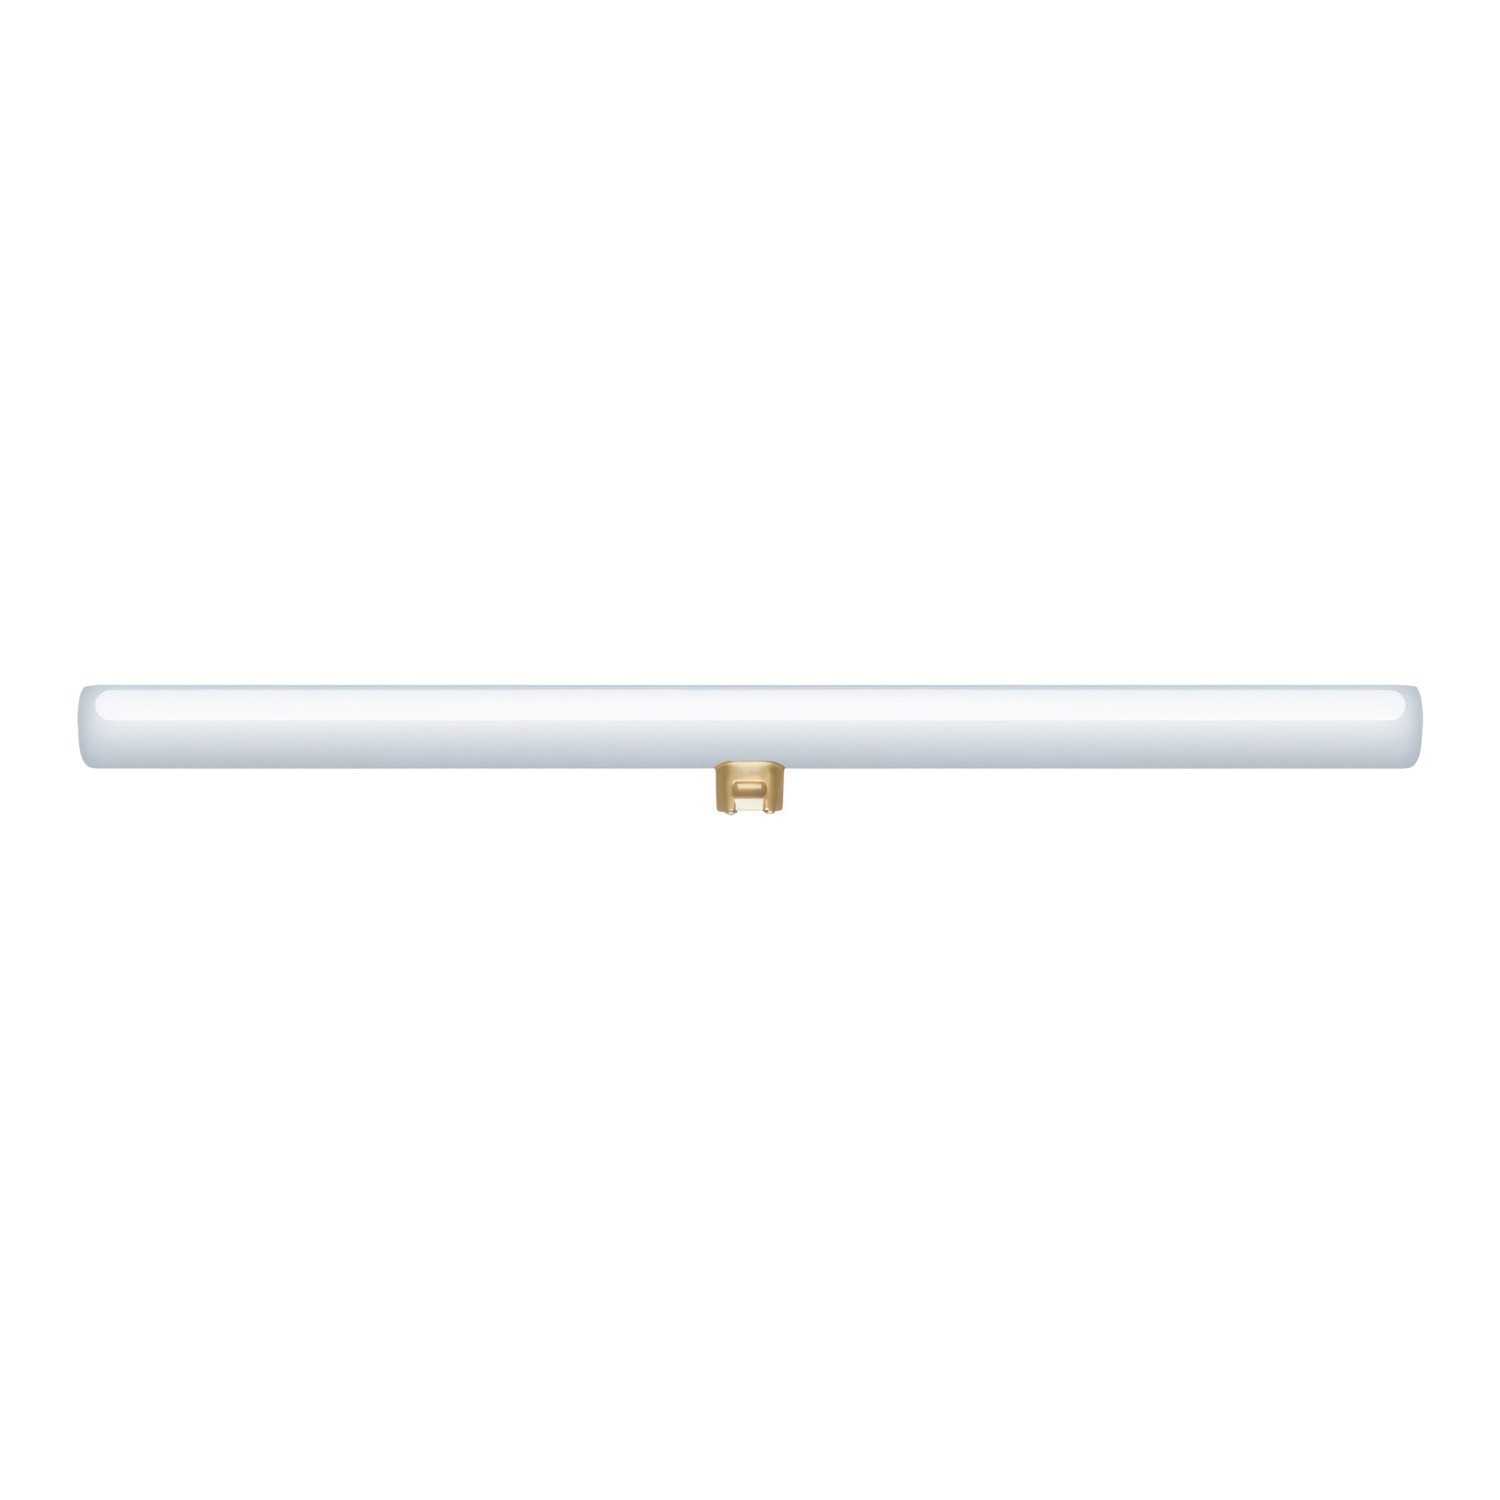 S14d LED lineáris opál izzó - Hossz 500 mm 6,2W 460 Lm 2700K dimmelhető - S14 rendszerhez